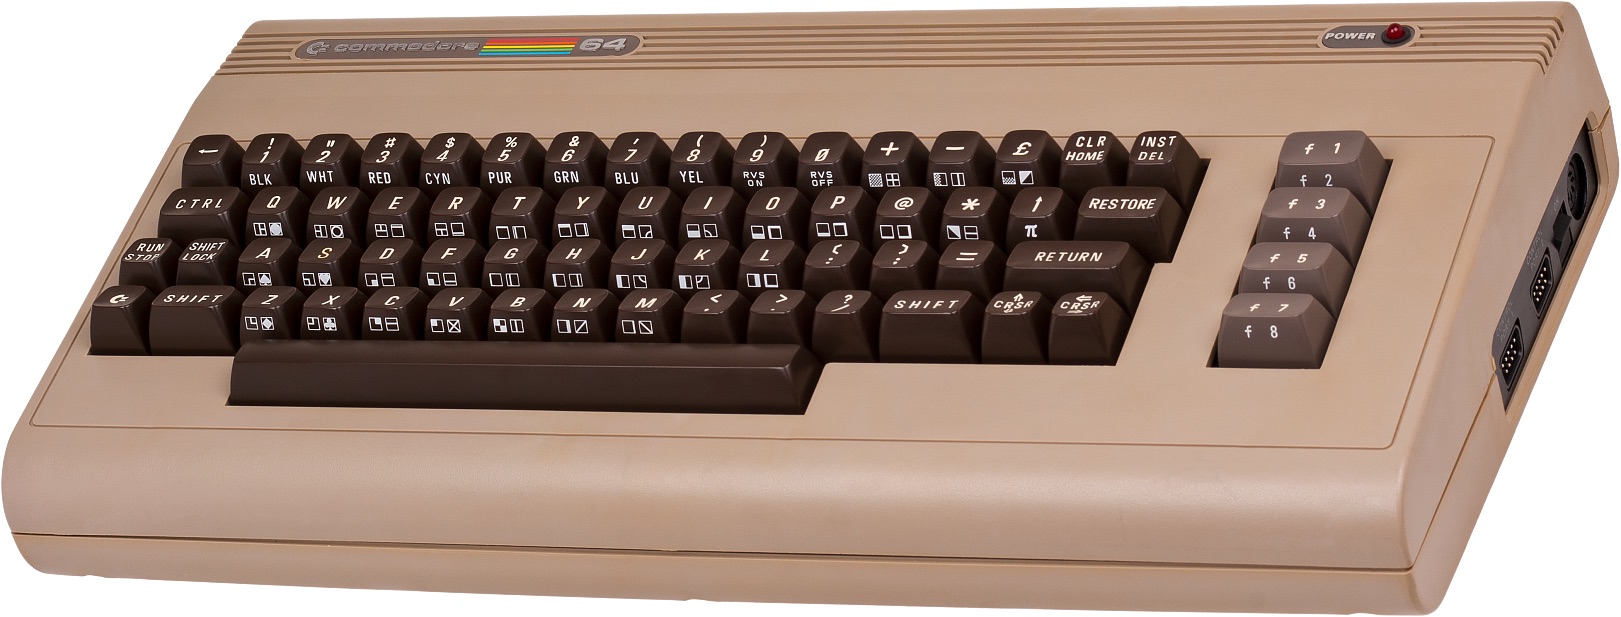 Commodore 64 cee37-s1621x617